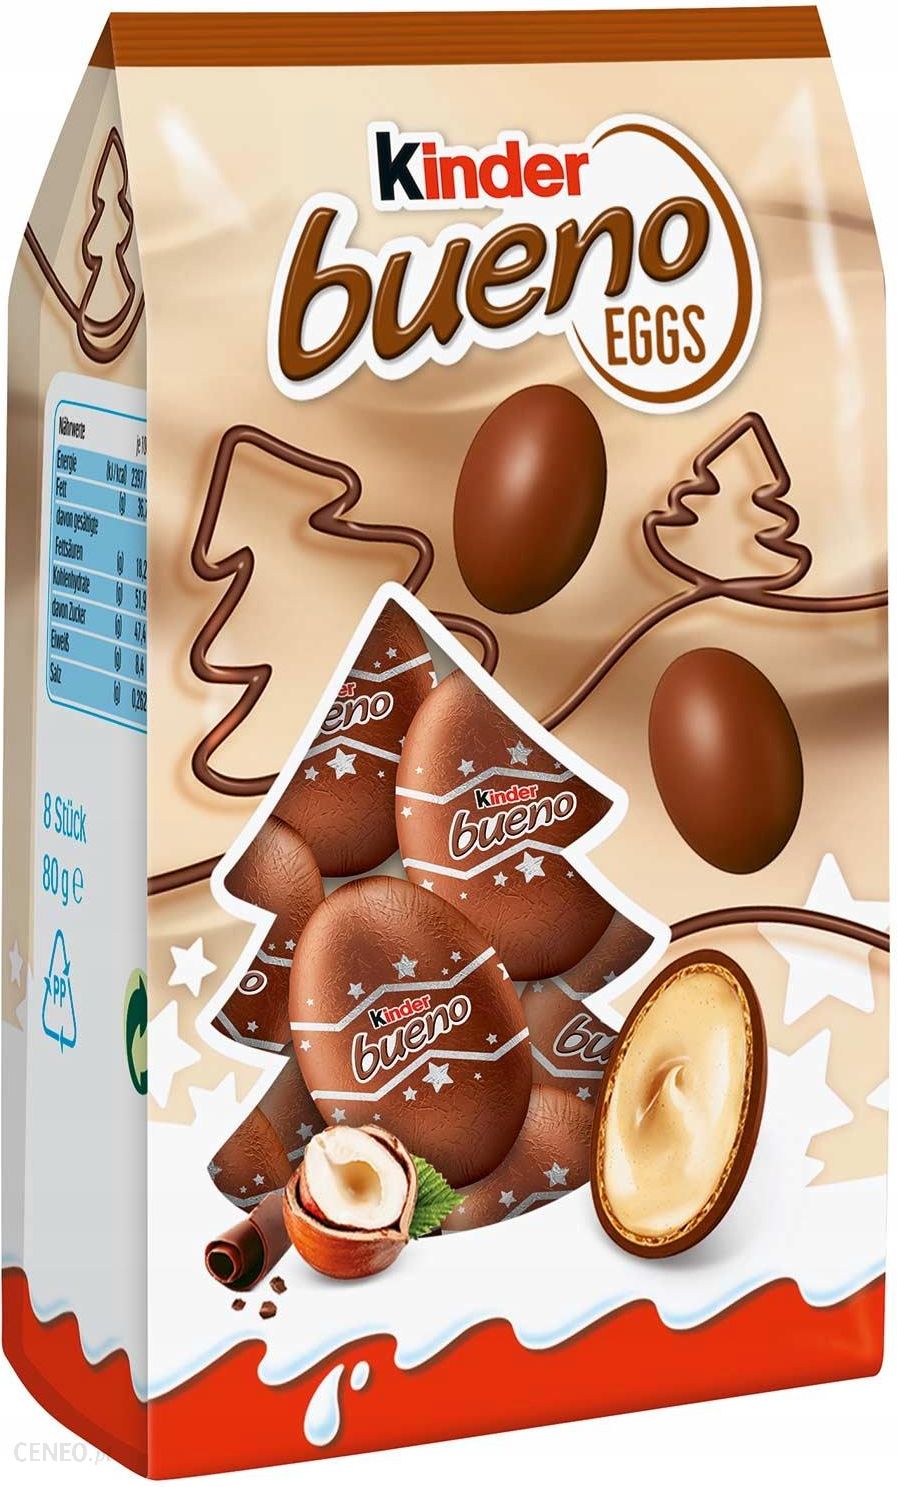 Ferrero Świąteczne Jajka Kinder Bueno Eggs Święta 80g - Ceny i